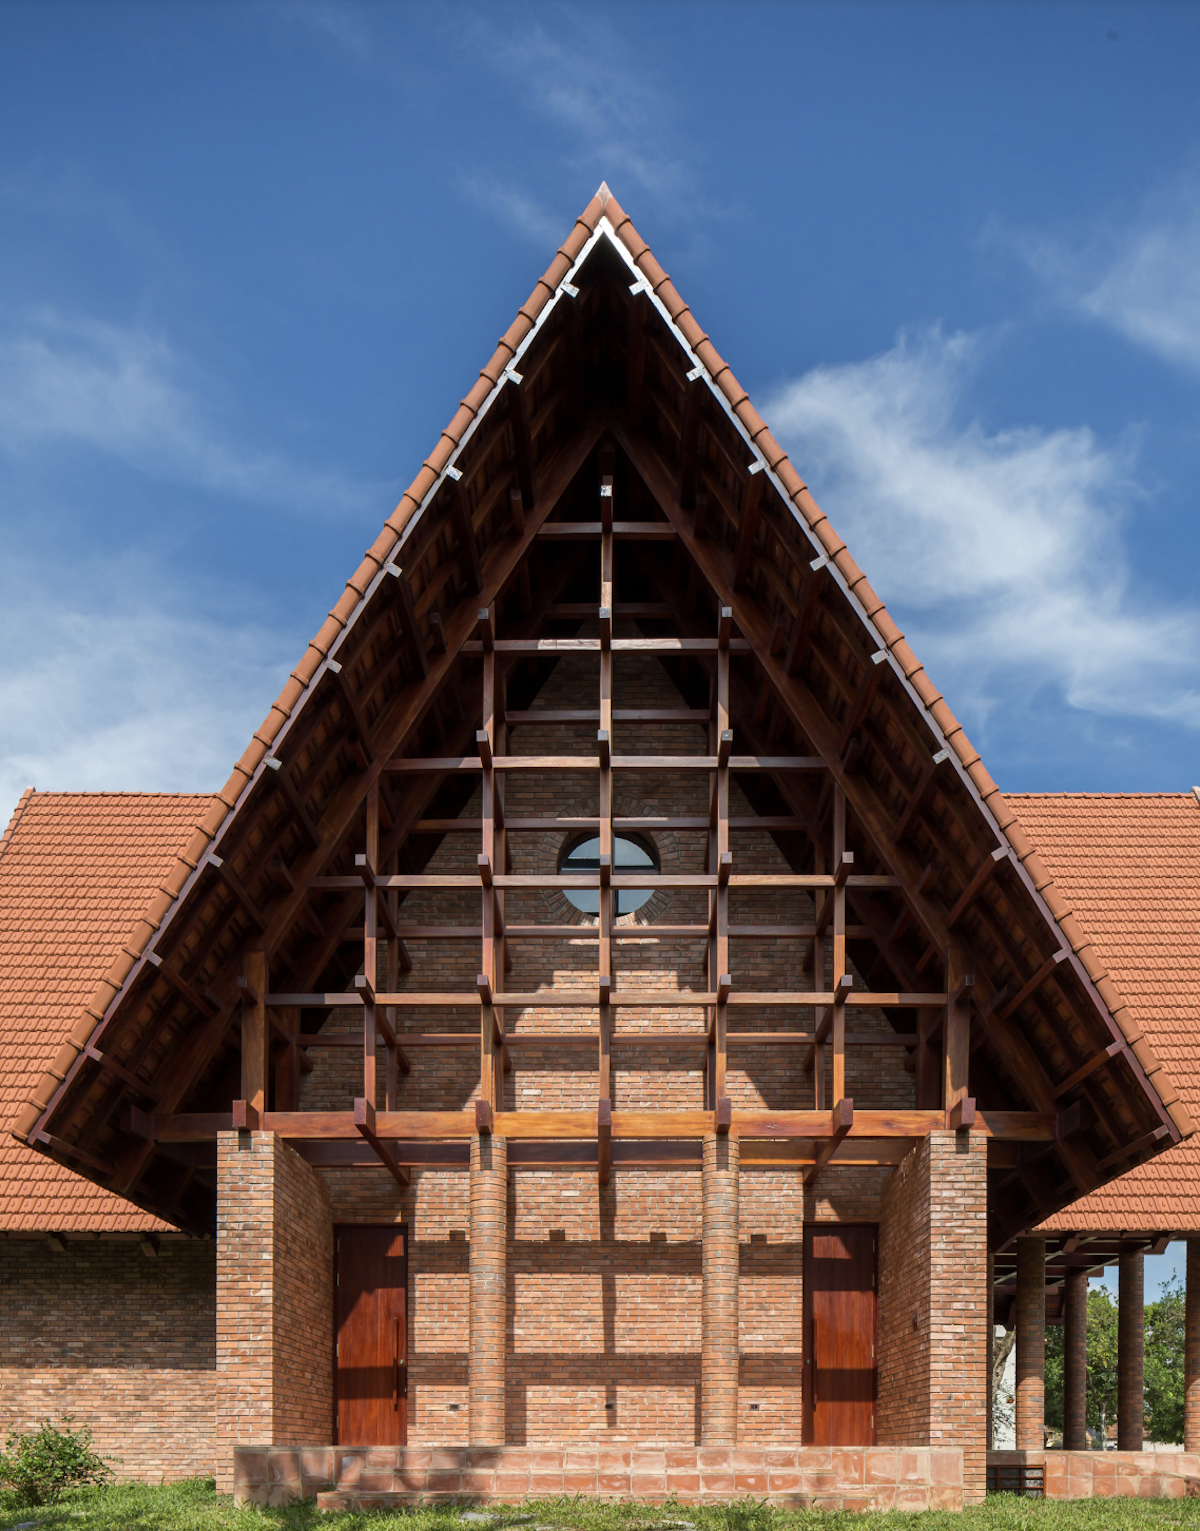 Kiến trúc đền thánh vững chãi và khép kín  truyền tải tinh thần Công giáo trong cộng đồng giáo xứ